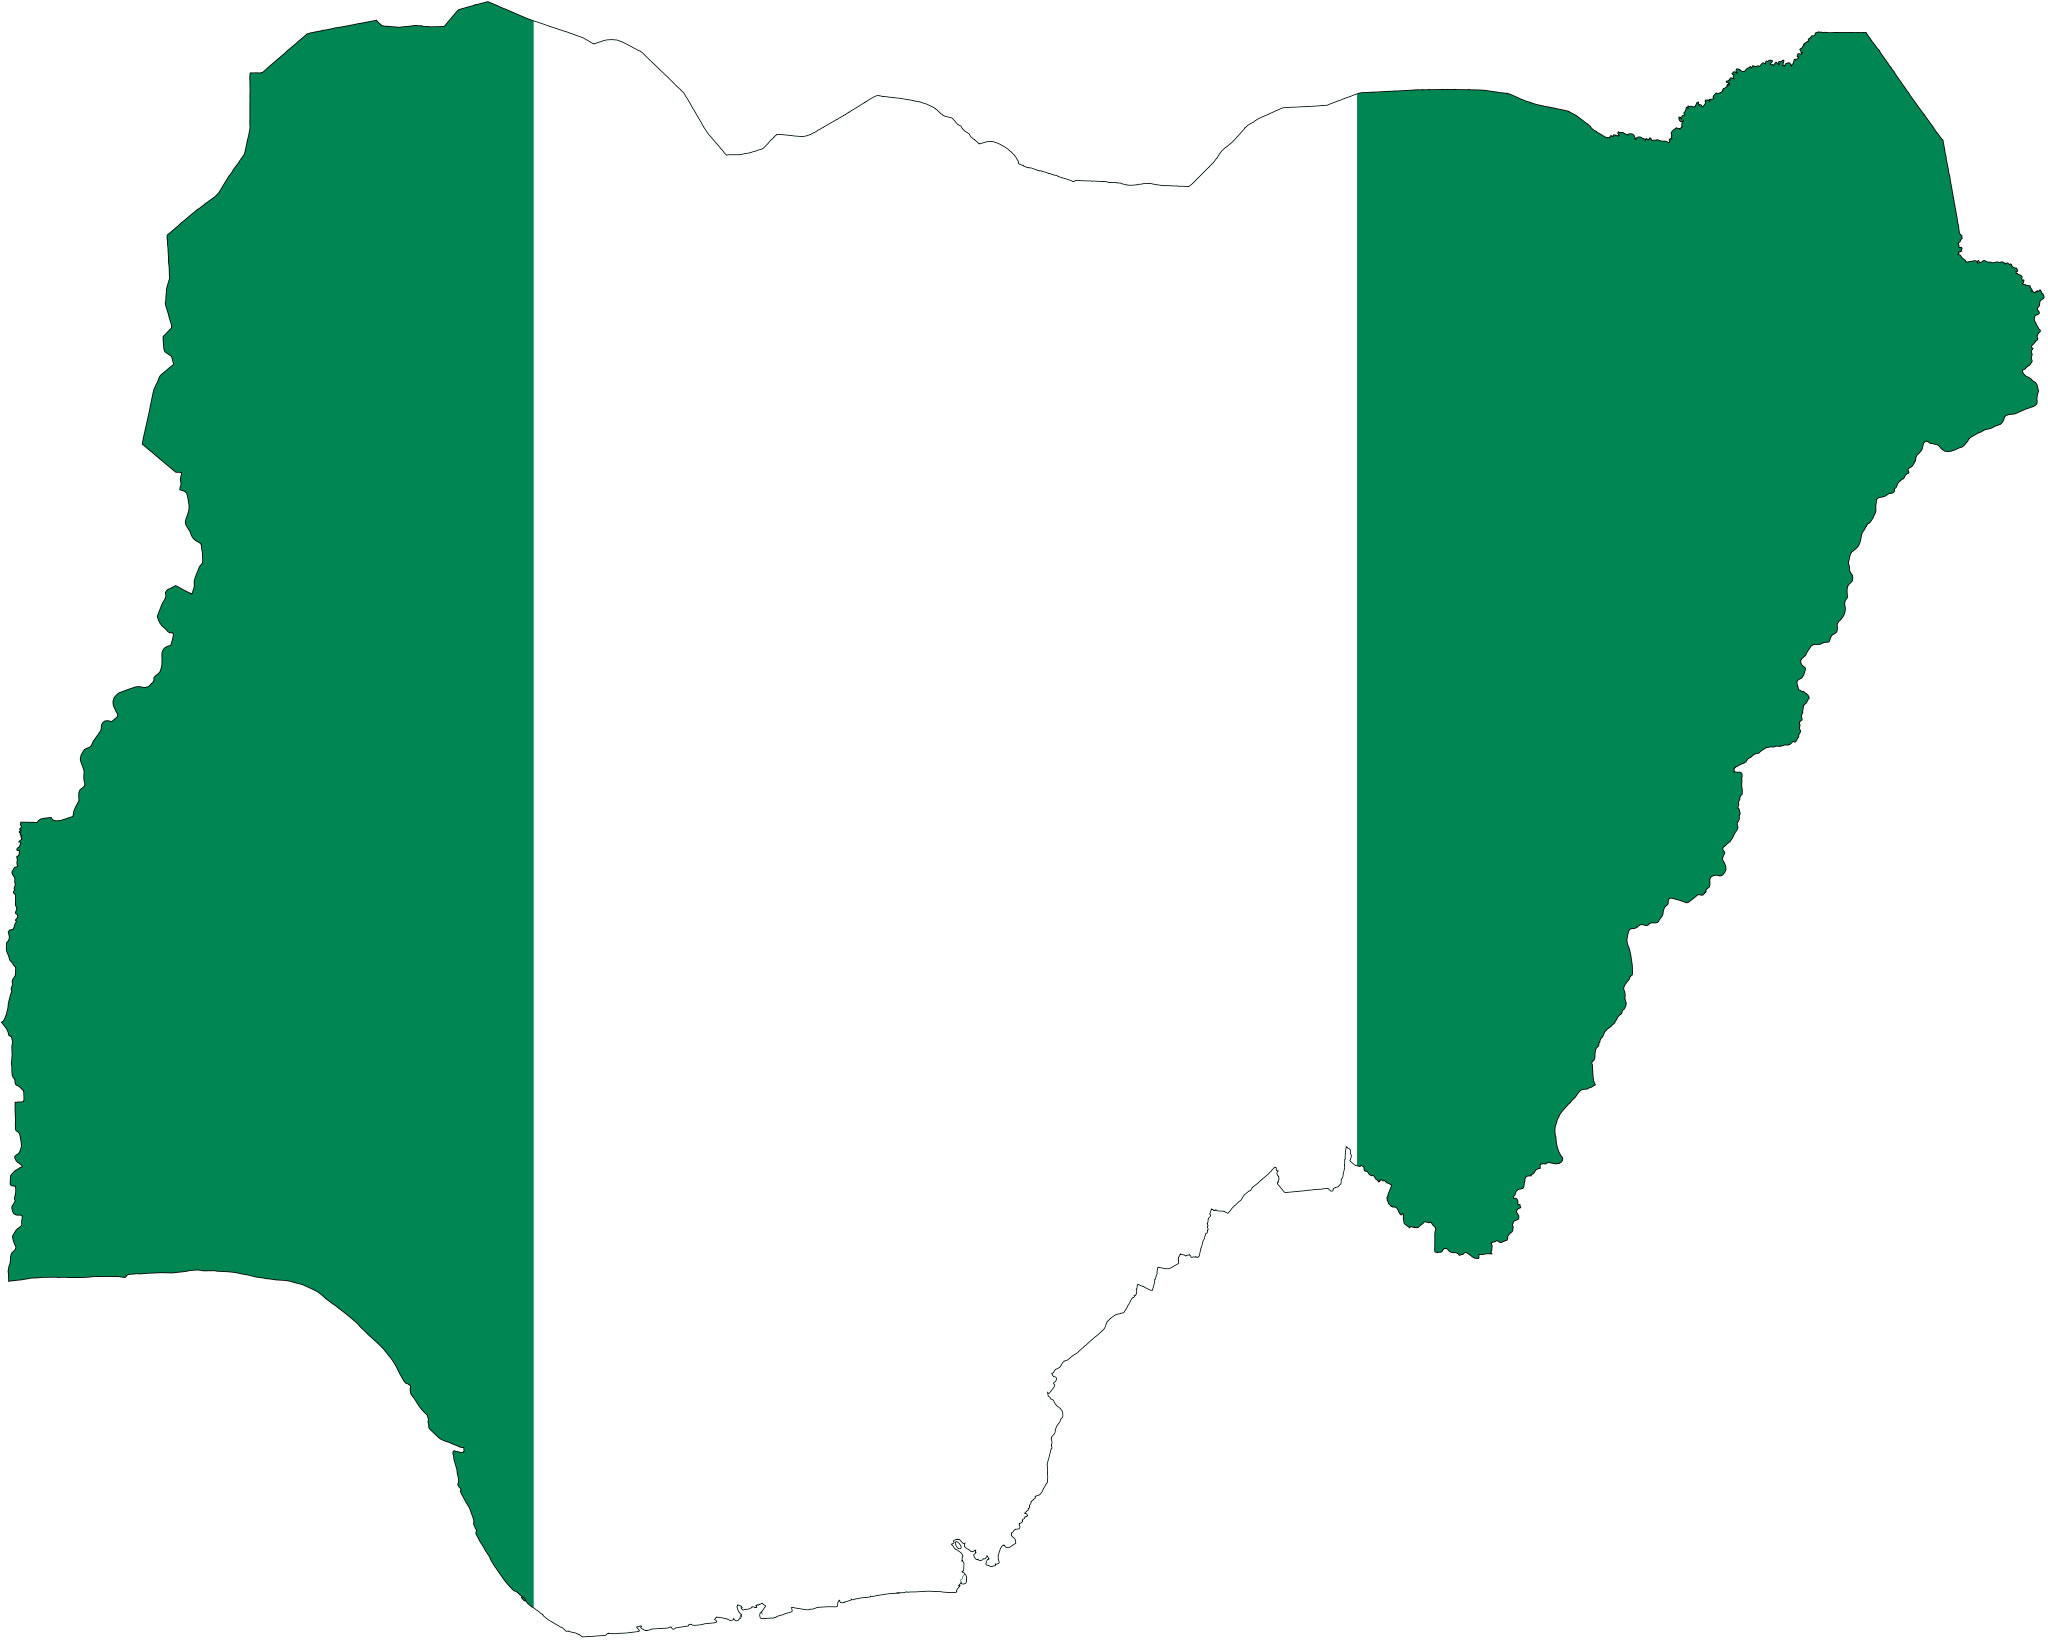 Résultat de recherche d'images pour "nigeria carte et drapeau"